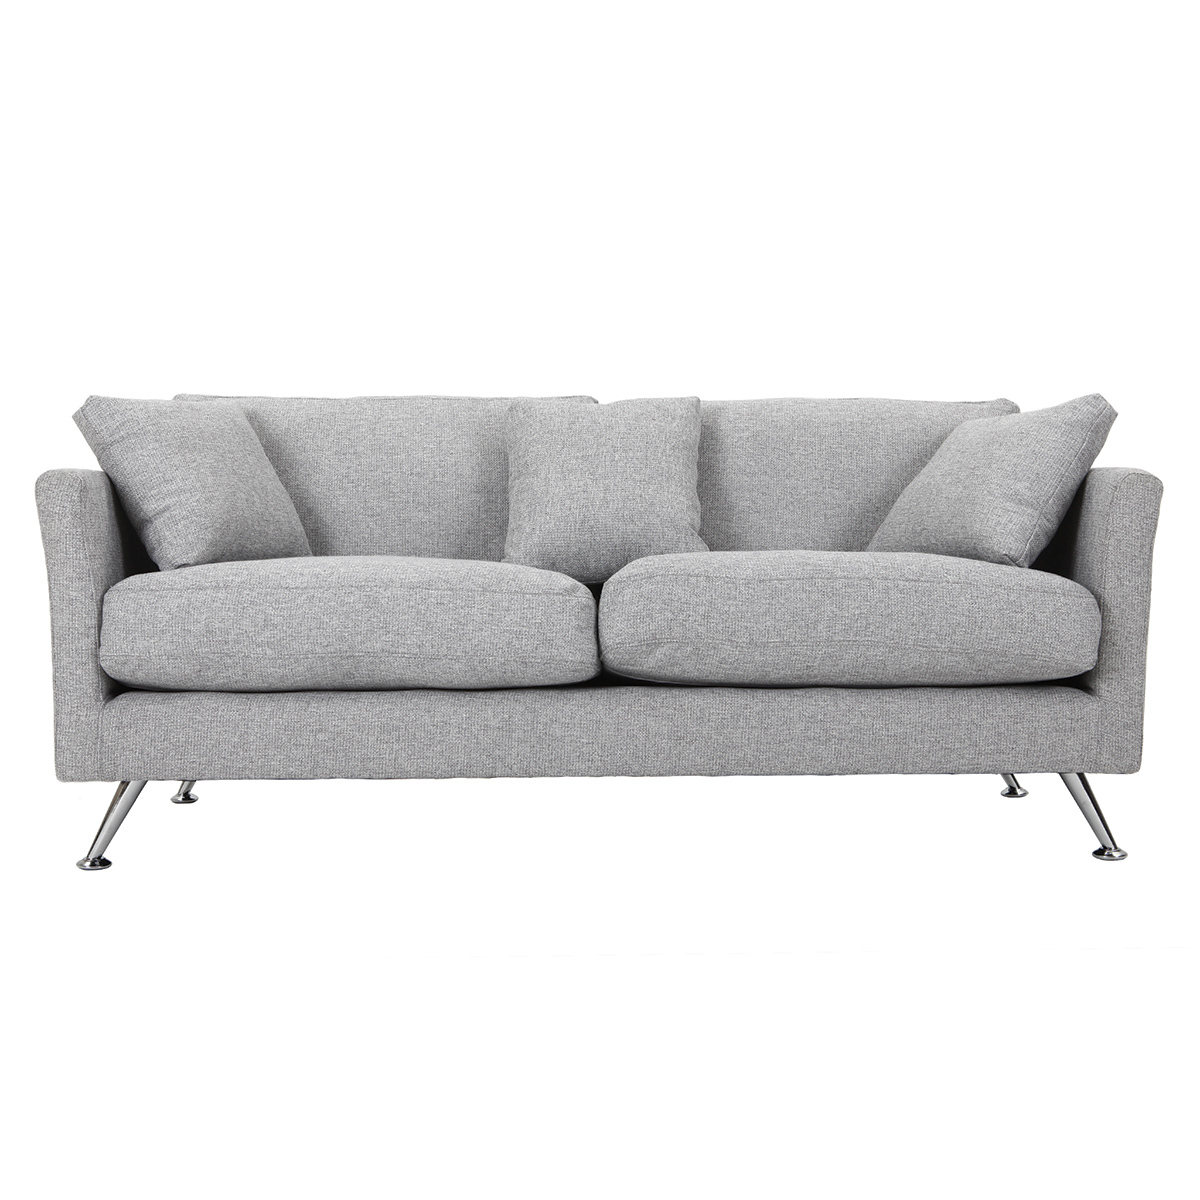 Canapé design 3 places en tissu gris clair et acier chromé  VOLUPT vue1